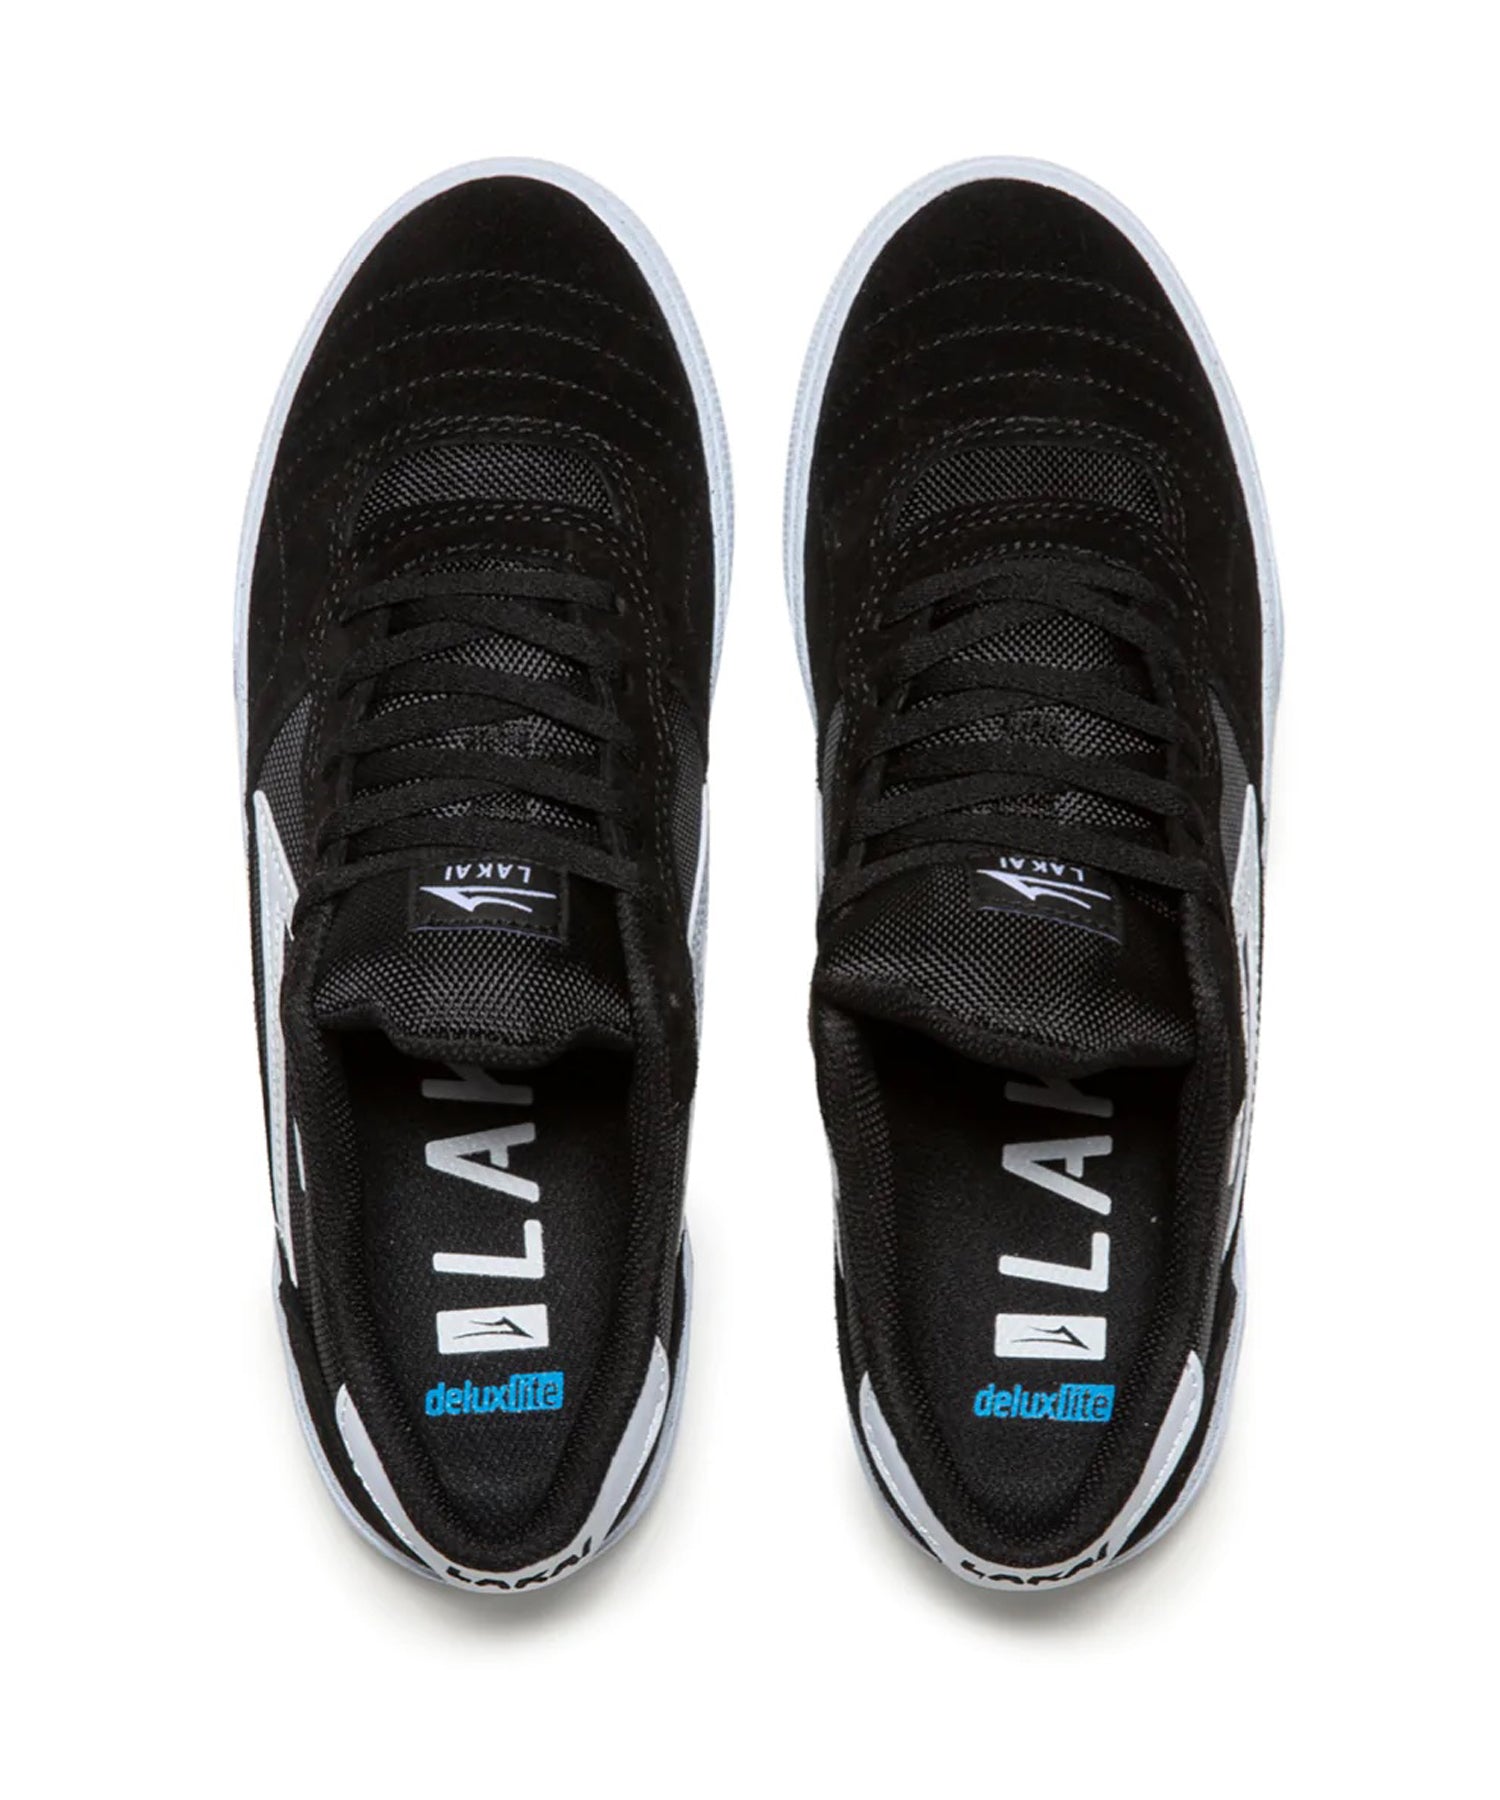 lakai-zapatillas-cambridge-black-estupenda zapatilla de la mítica marca lakai-zapato de skate duradero-puntera de una sola pieza-suela de goma blanca.